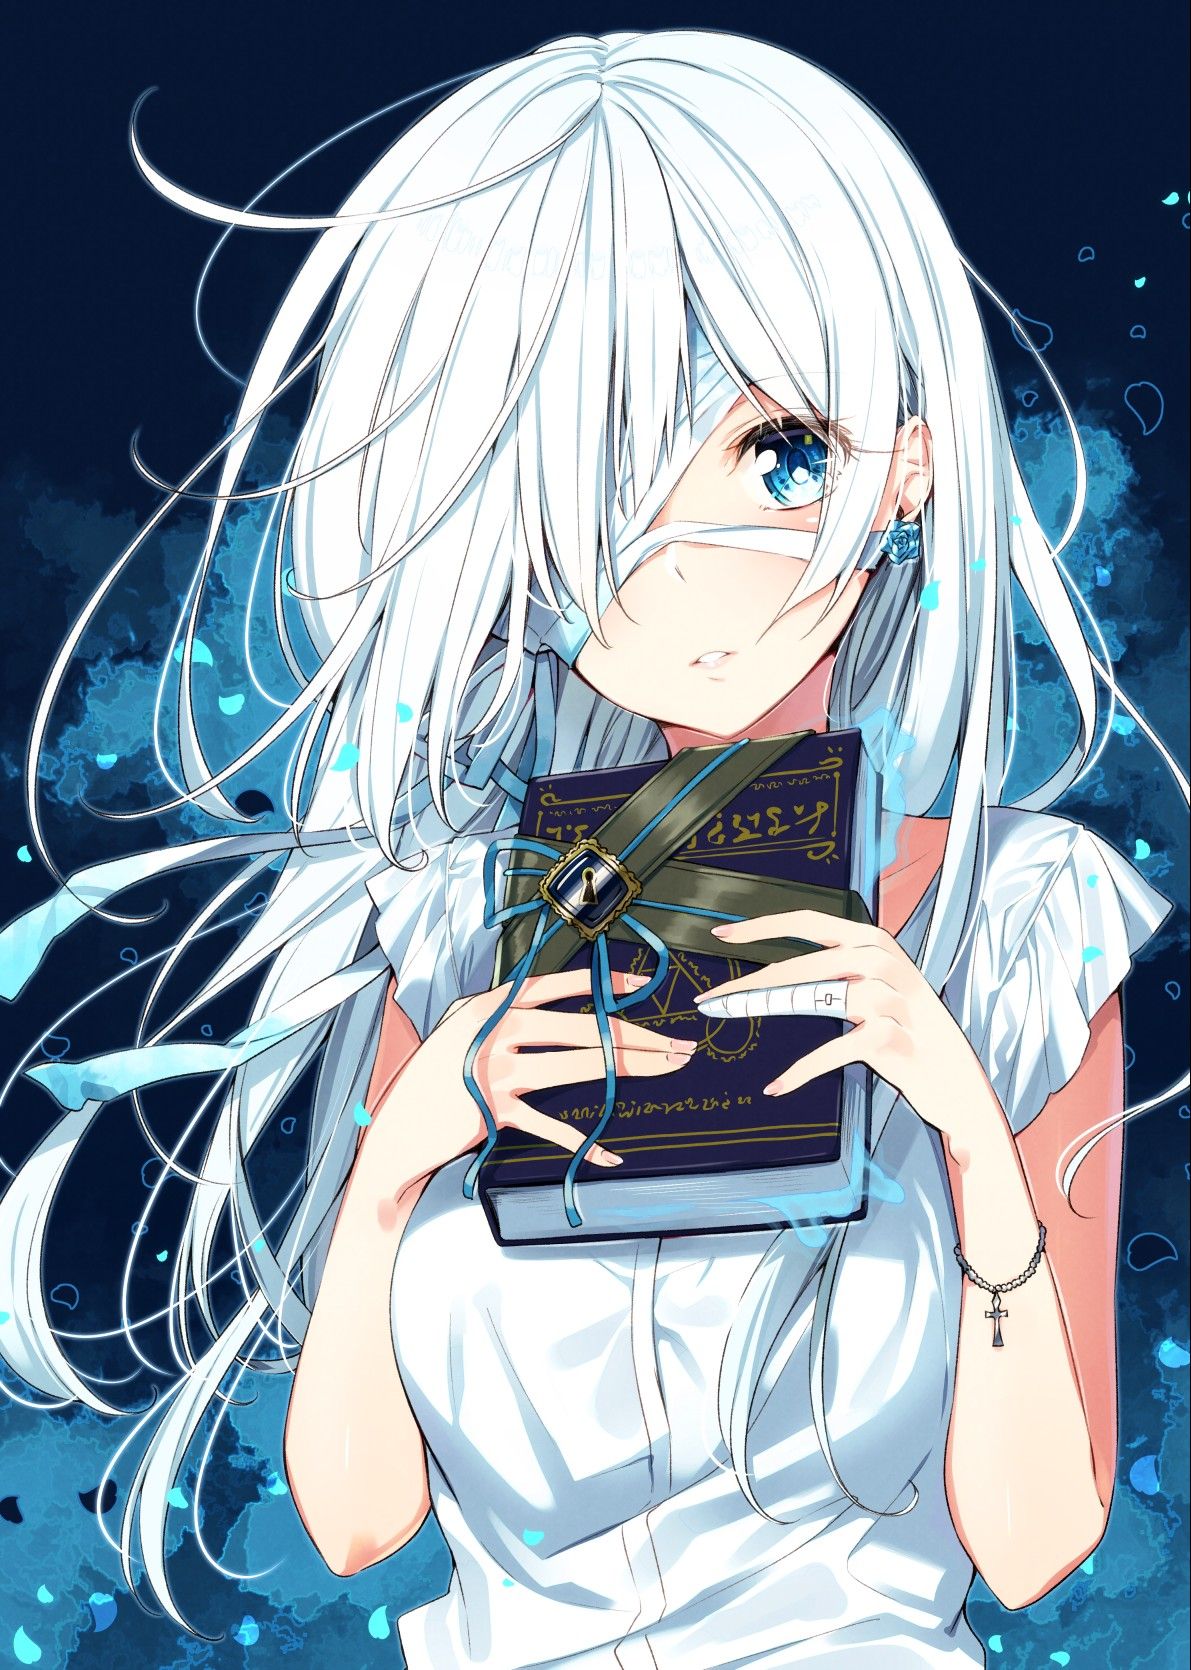 Hình anime cô gái tóc trắng băng mắt